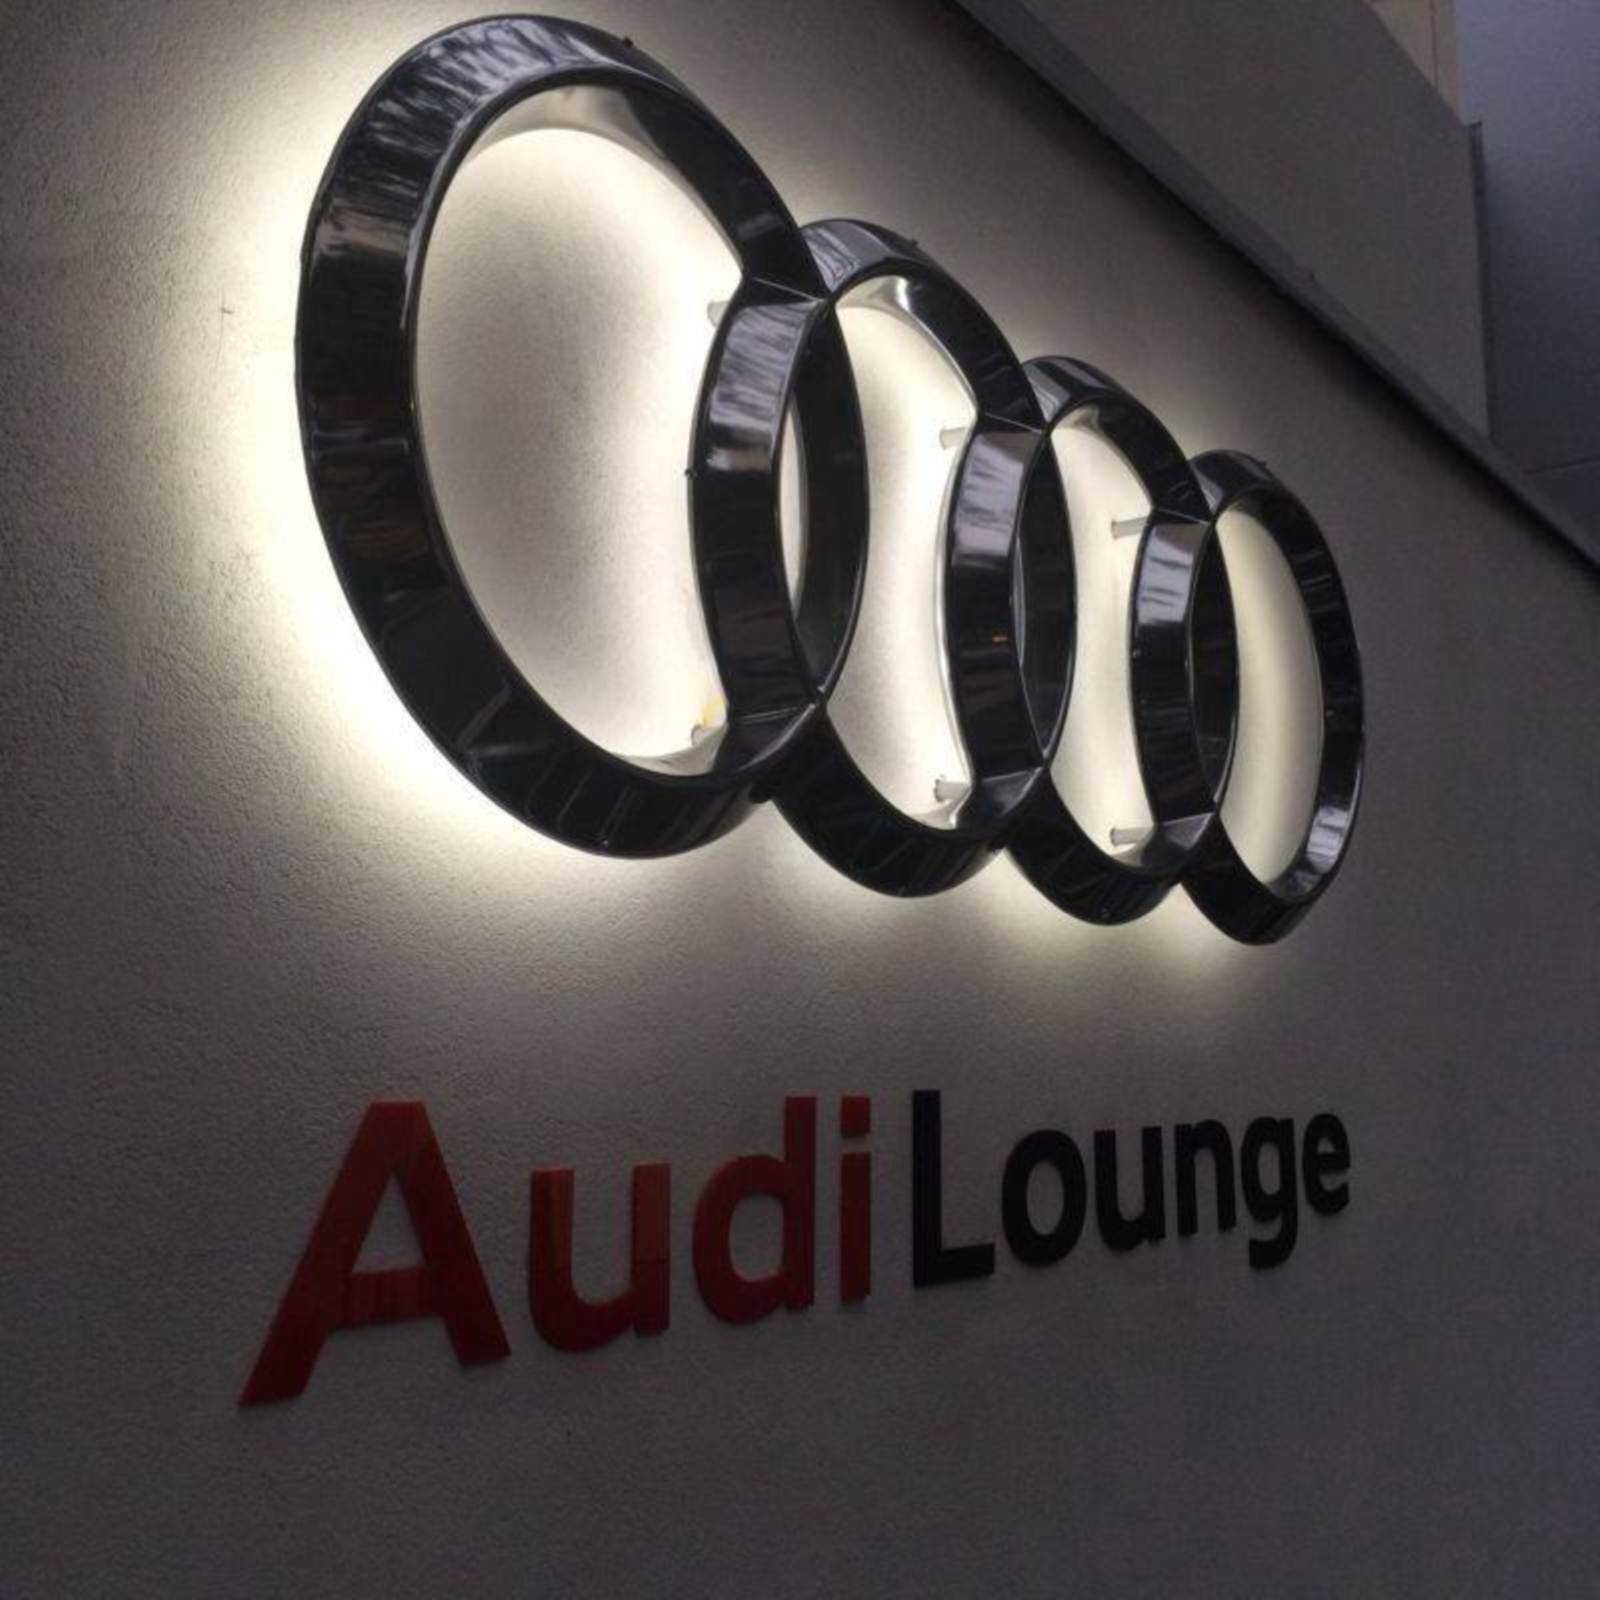 Audi Lounge - São Paulo - Brasil